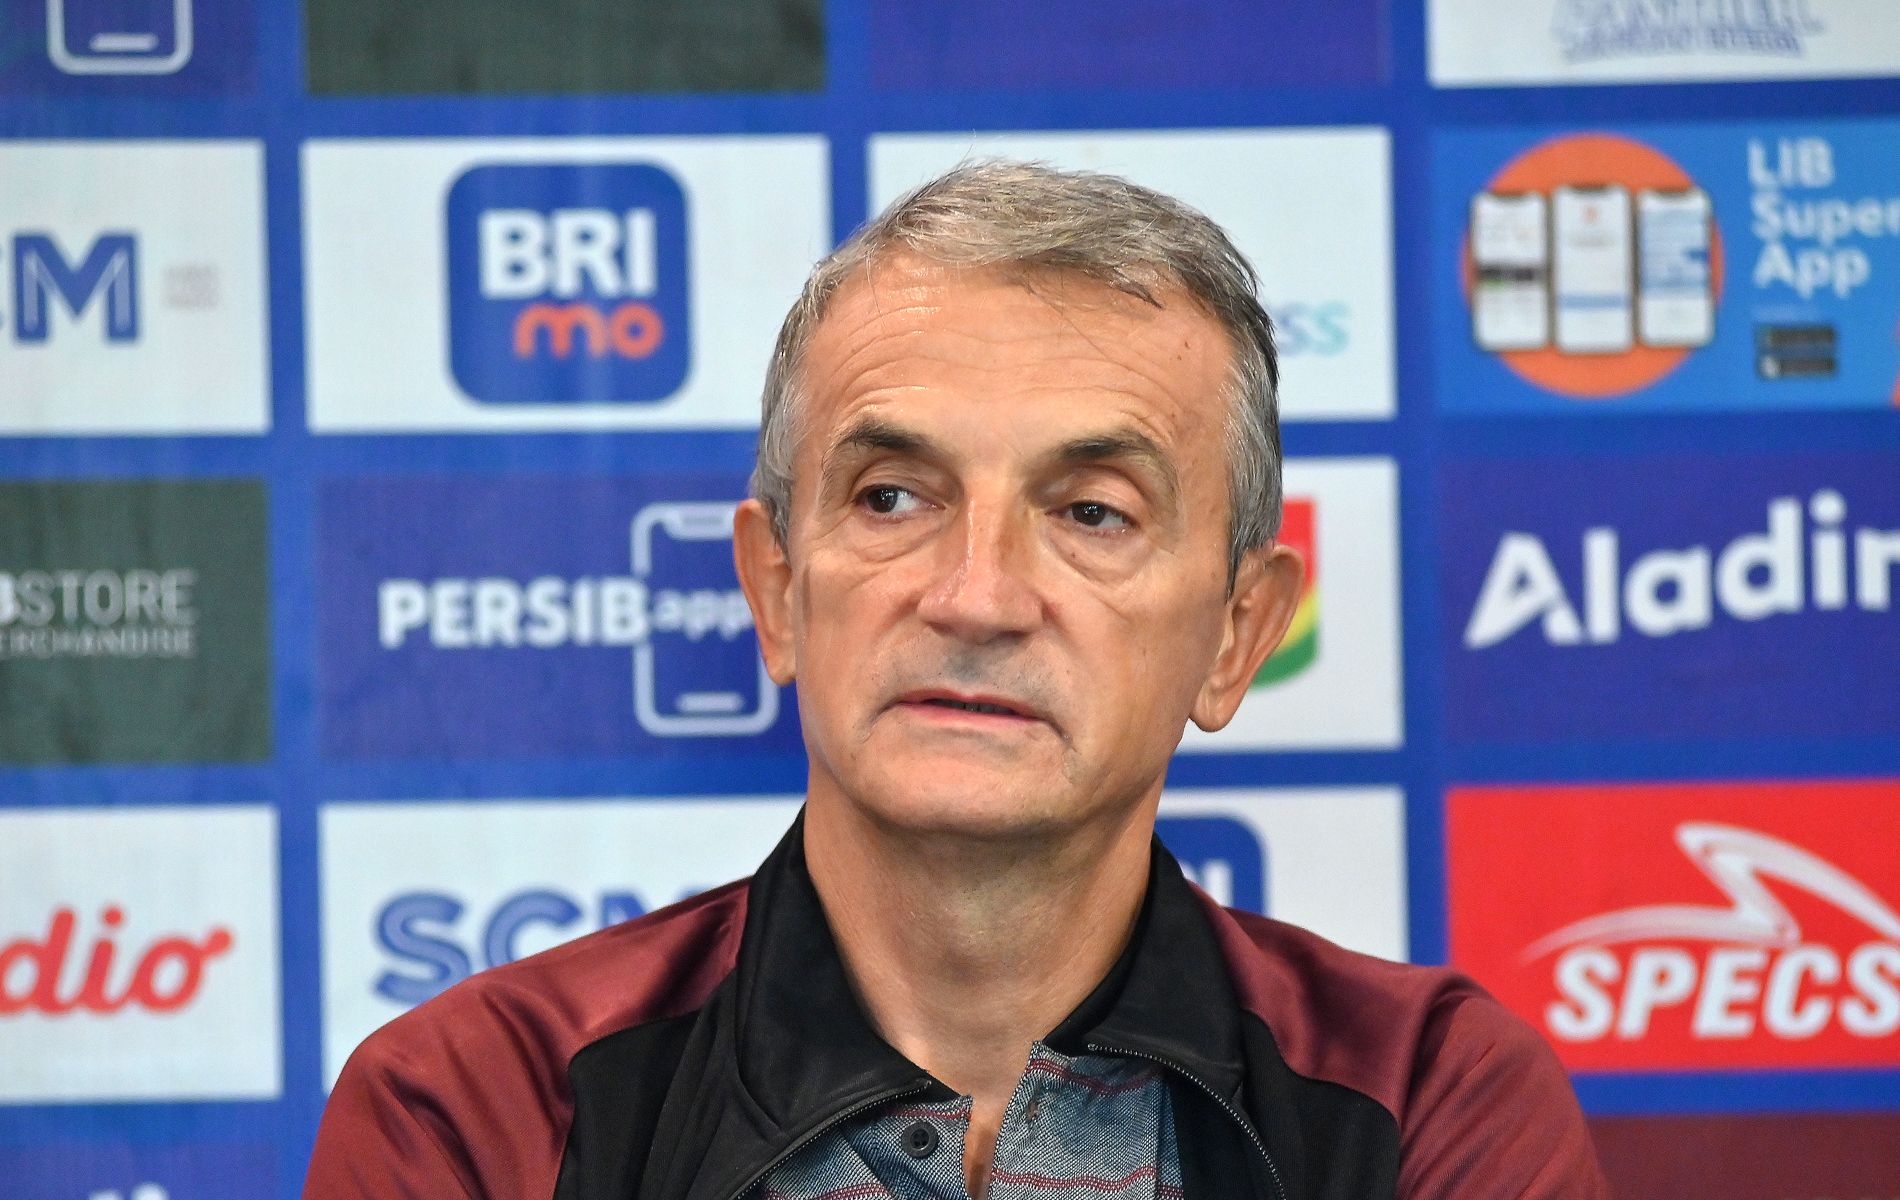 Pelatih Persis Solo Milomir Seslija dalam konferensi pers jelang pertandingan lawan Persib.